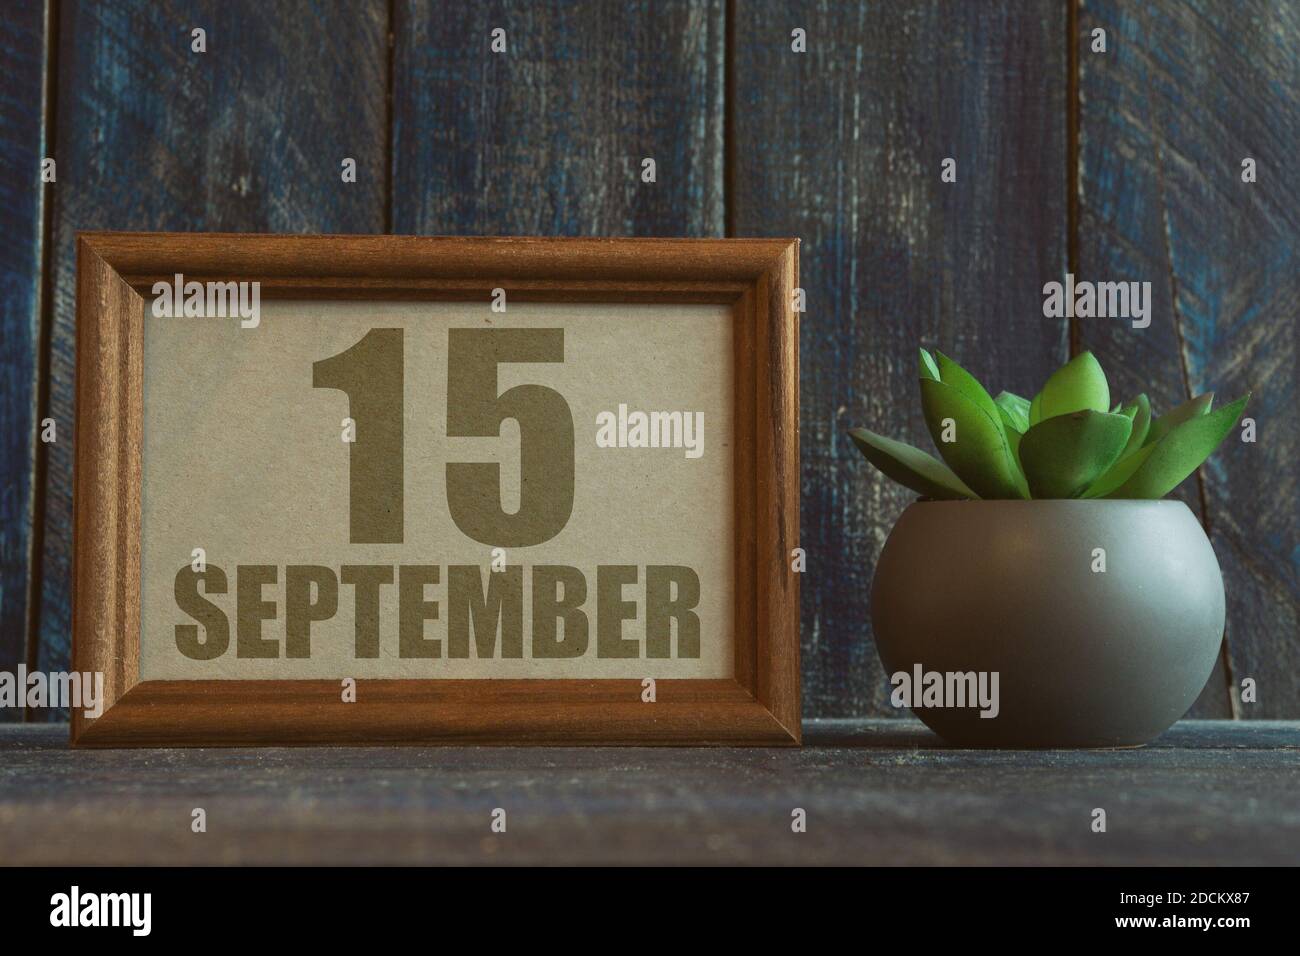 september. Tag 15 des Monats, Datum im Rahmen neben Sukkulente auf Holzhintergrund Herbstmonat, Tag des Jahres Konzept Stockfoto